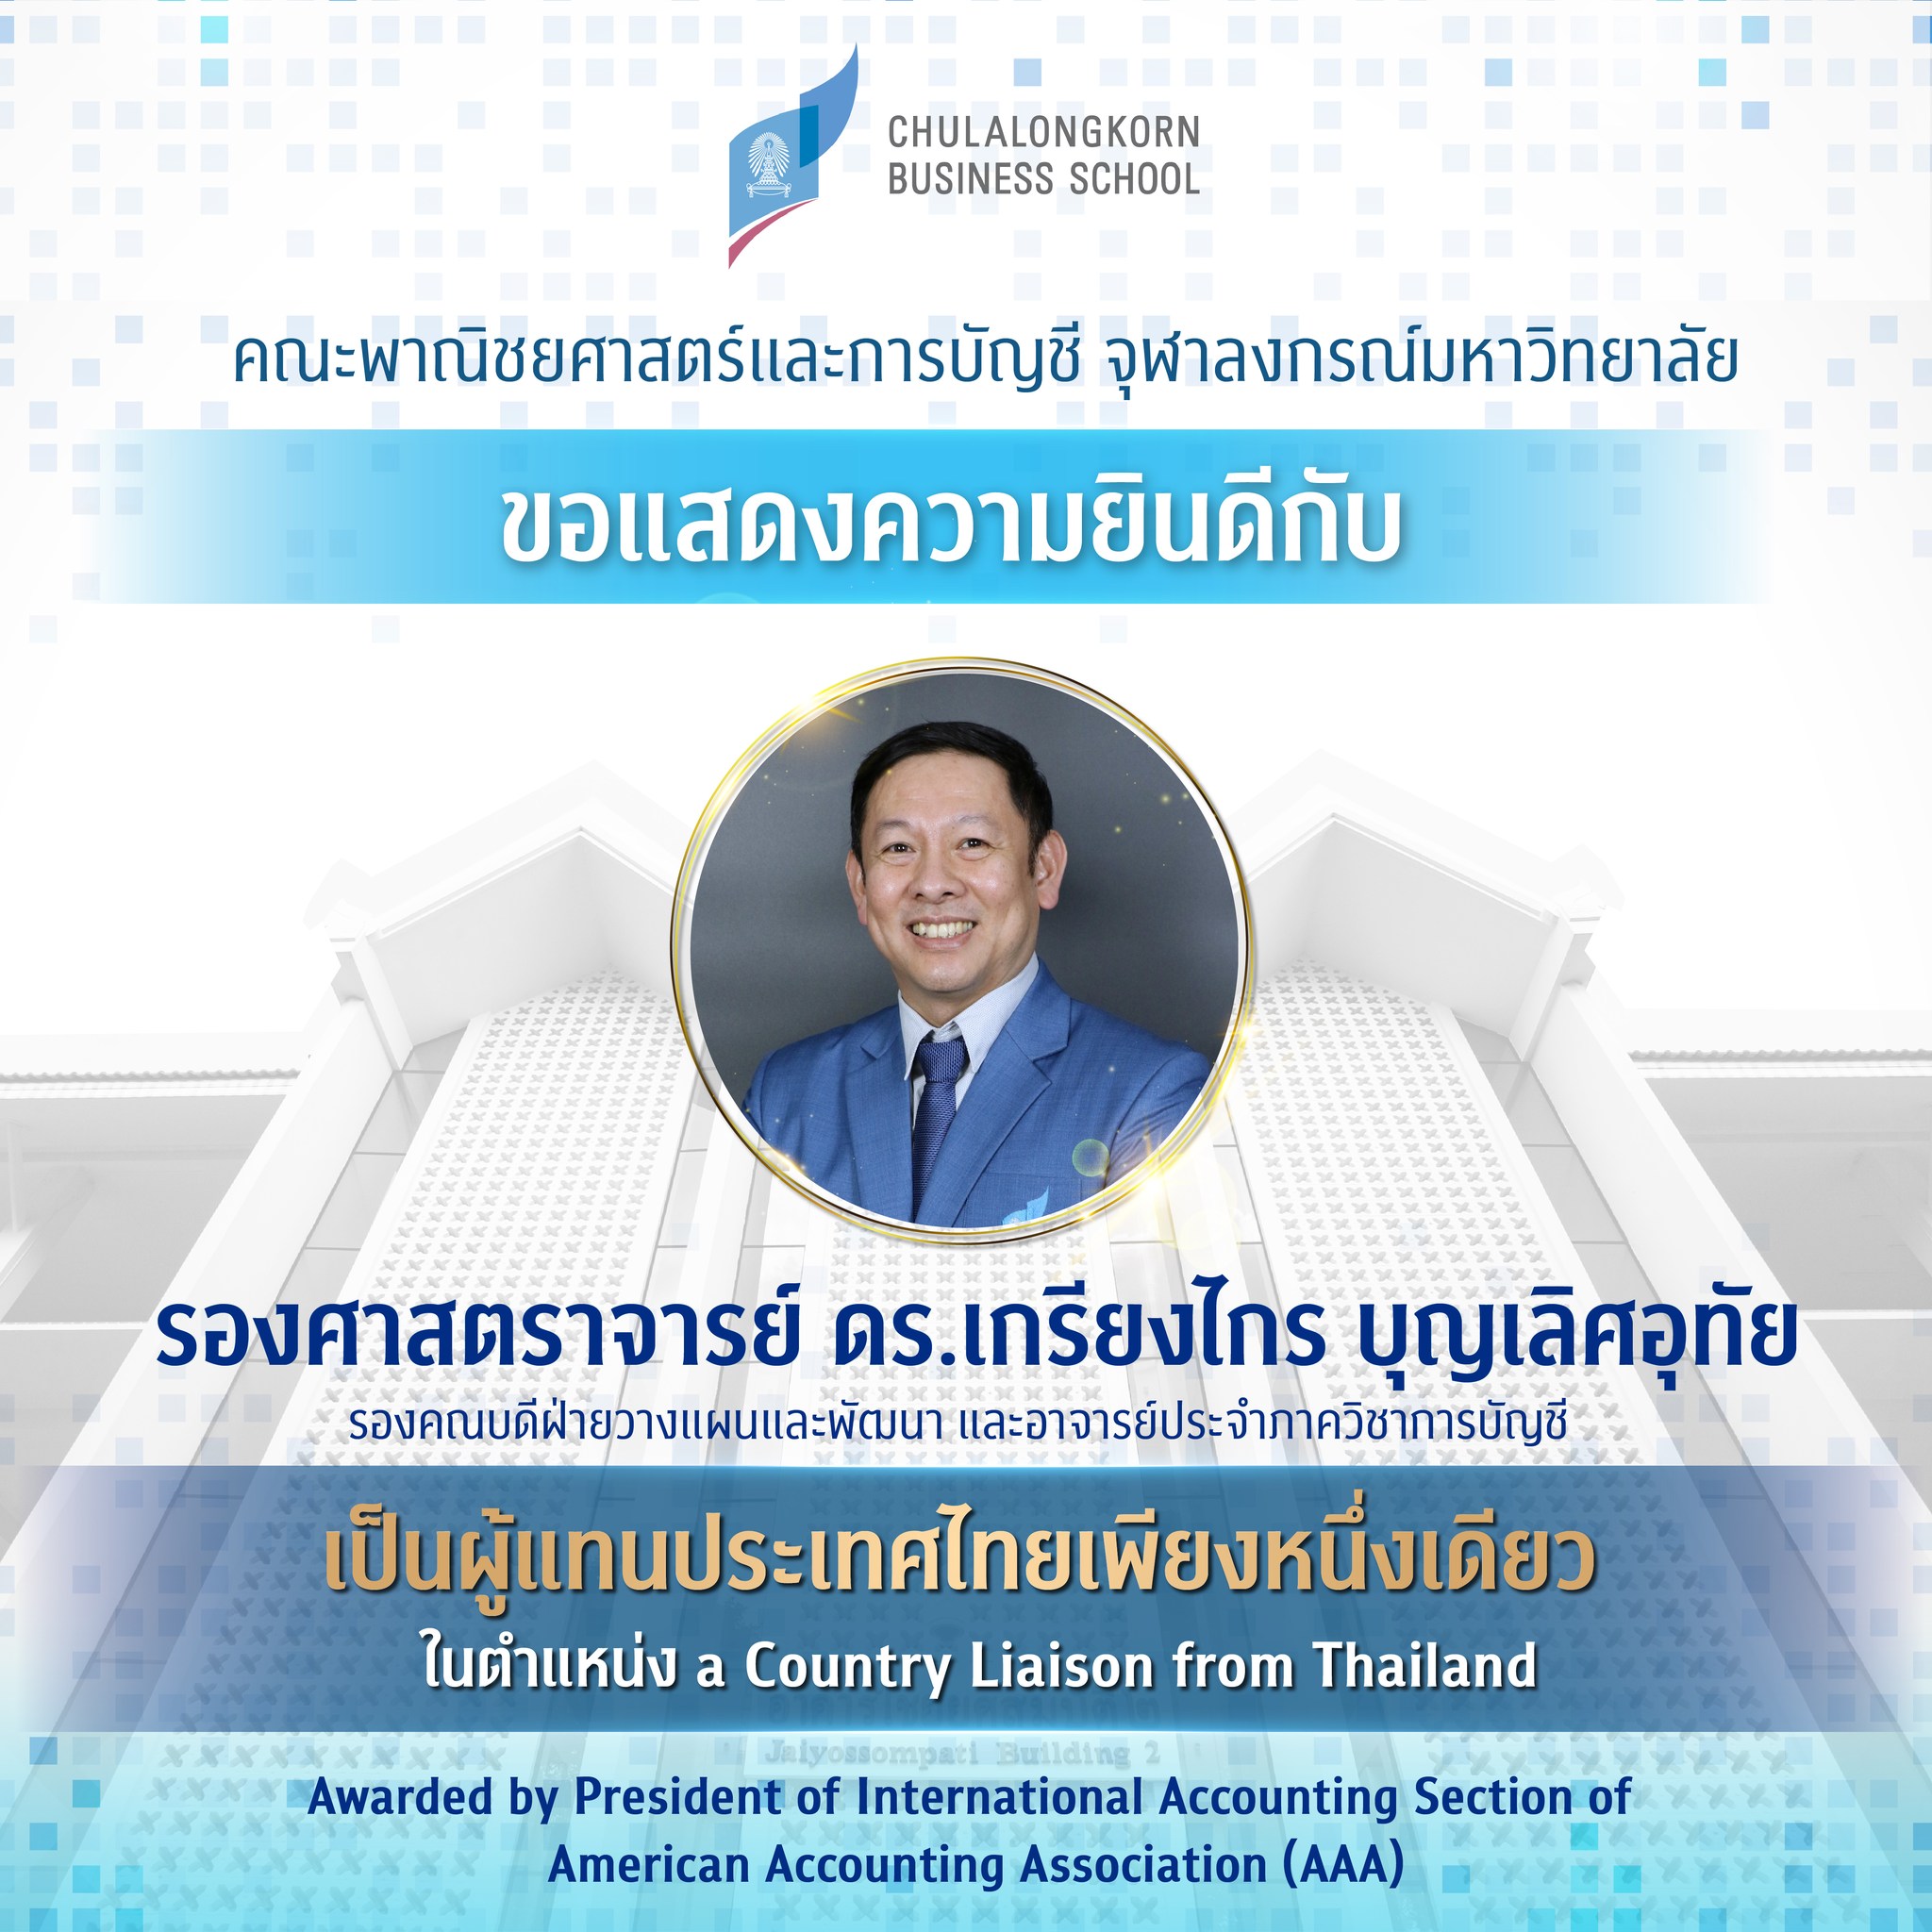 คณะพาณิชยศาสตร์และการบัญชี จุฬาฯ ขอแสดงความยินดีกับ รองศาสตราจารย์ ดร.เกรียงไกร บุญเลิศอุทัย เป็นผู้แทนประเทศเพียงหนึ่งเดียว ในตำแหน่ง a country liaison from Thailand สำหรับปีการศึกษา 2023 – 2024